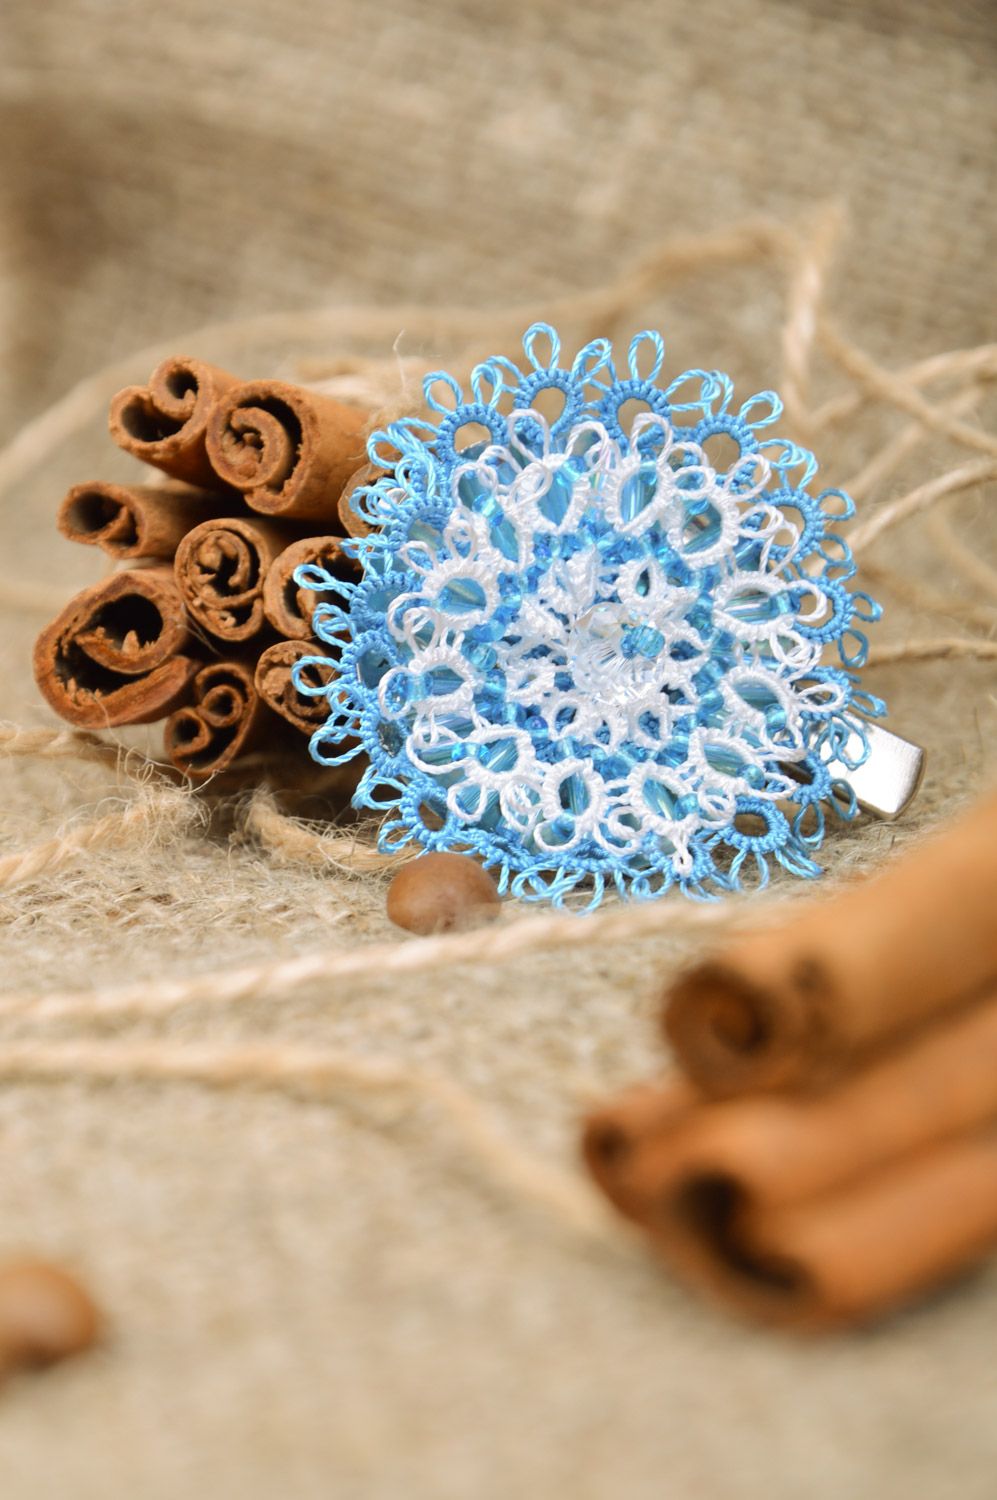 Текстильная брошь-заколка в виде голубого цветка в технике фриволите хэнд мэйд фото 1